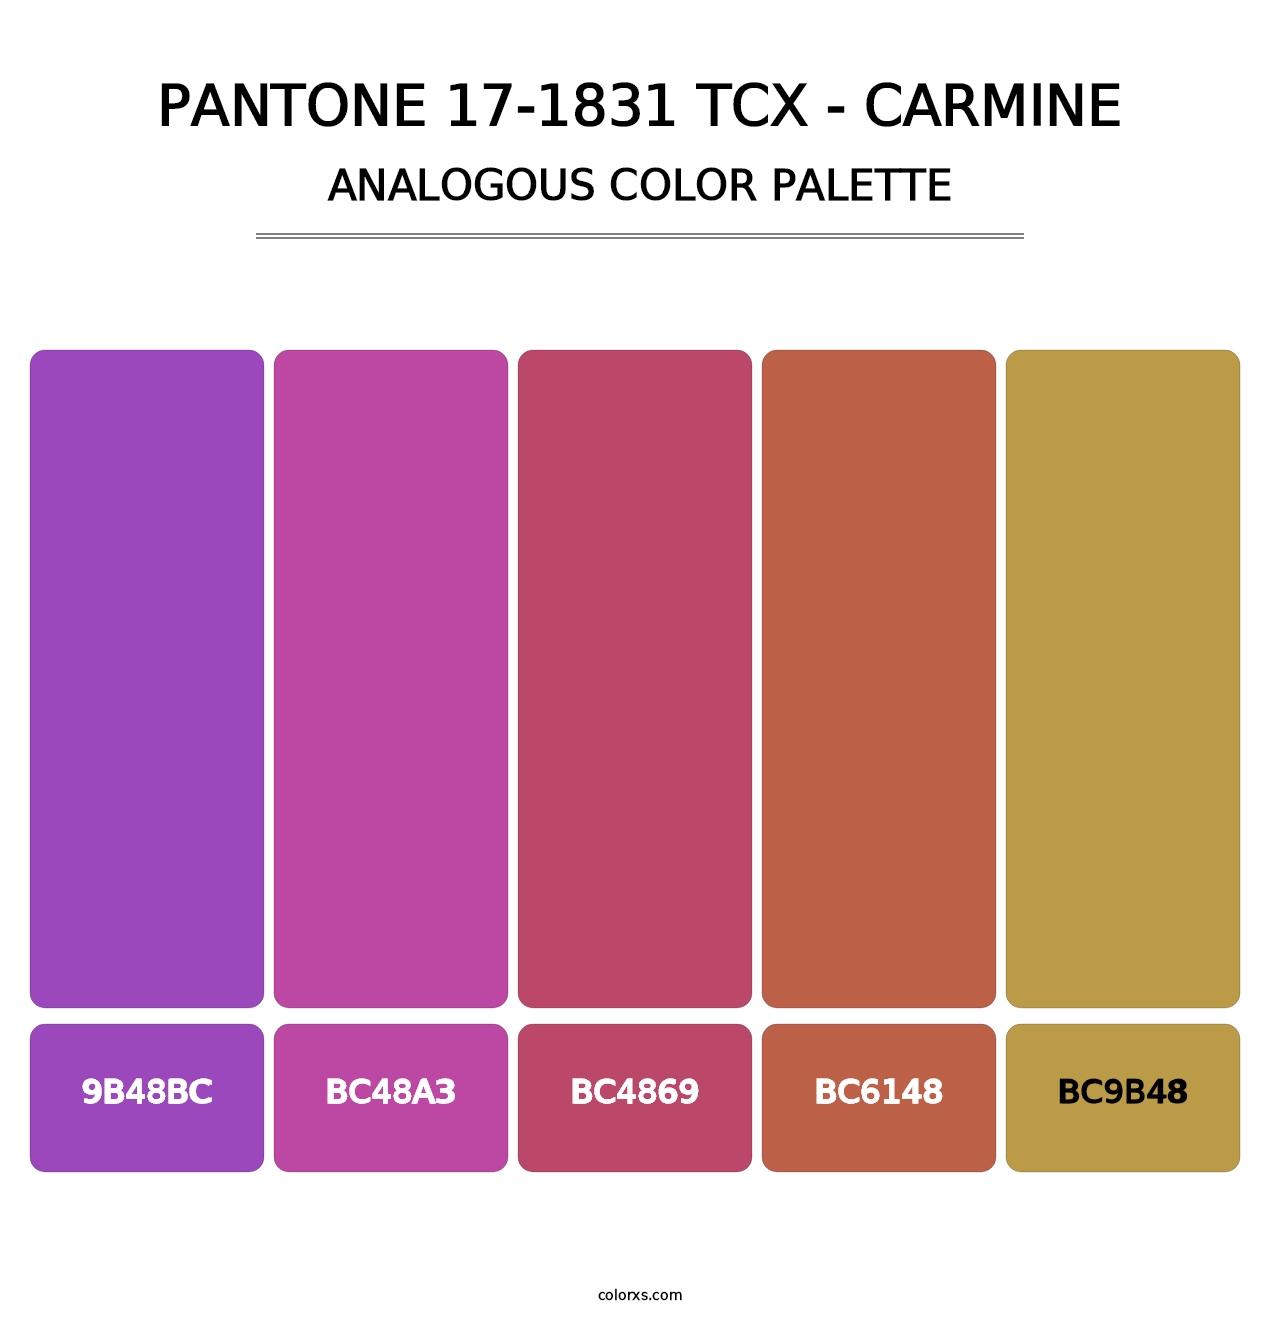 PANTONE 17-1831 TCX - Carmine - Analogous Color Palette